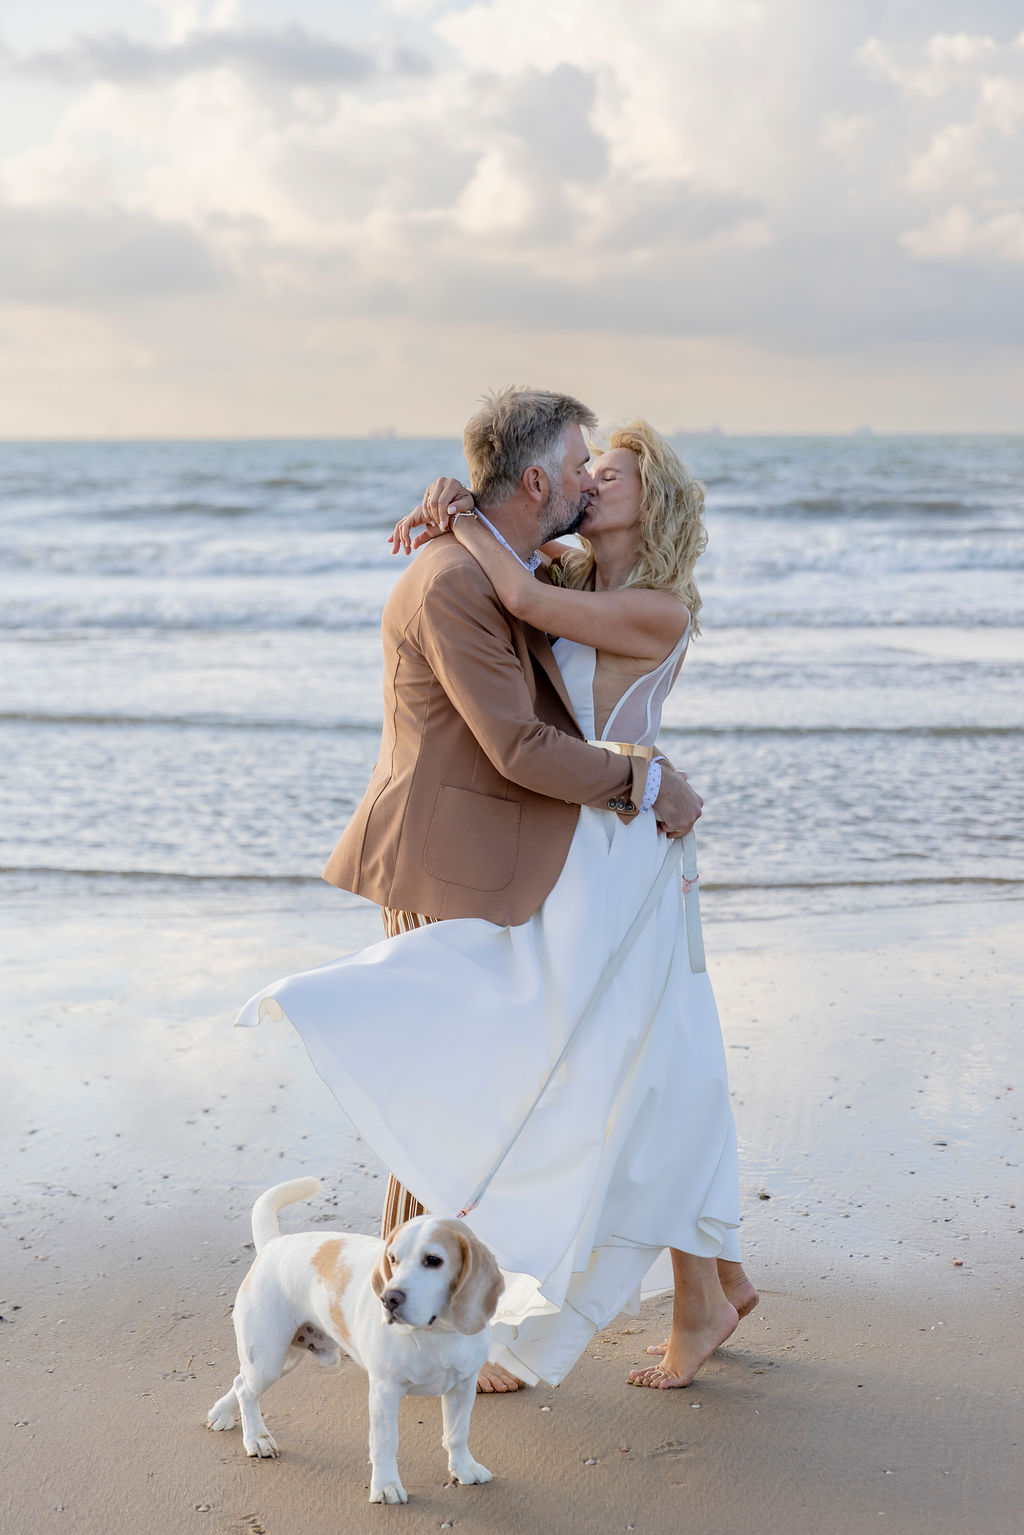 ein Silberhochzeit Brautpaar knutscht am Strand, während der Familienhund daneben steht | Hochzeitsplanung: Sagt Ja